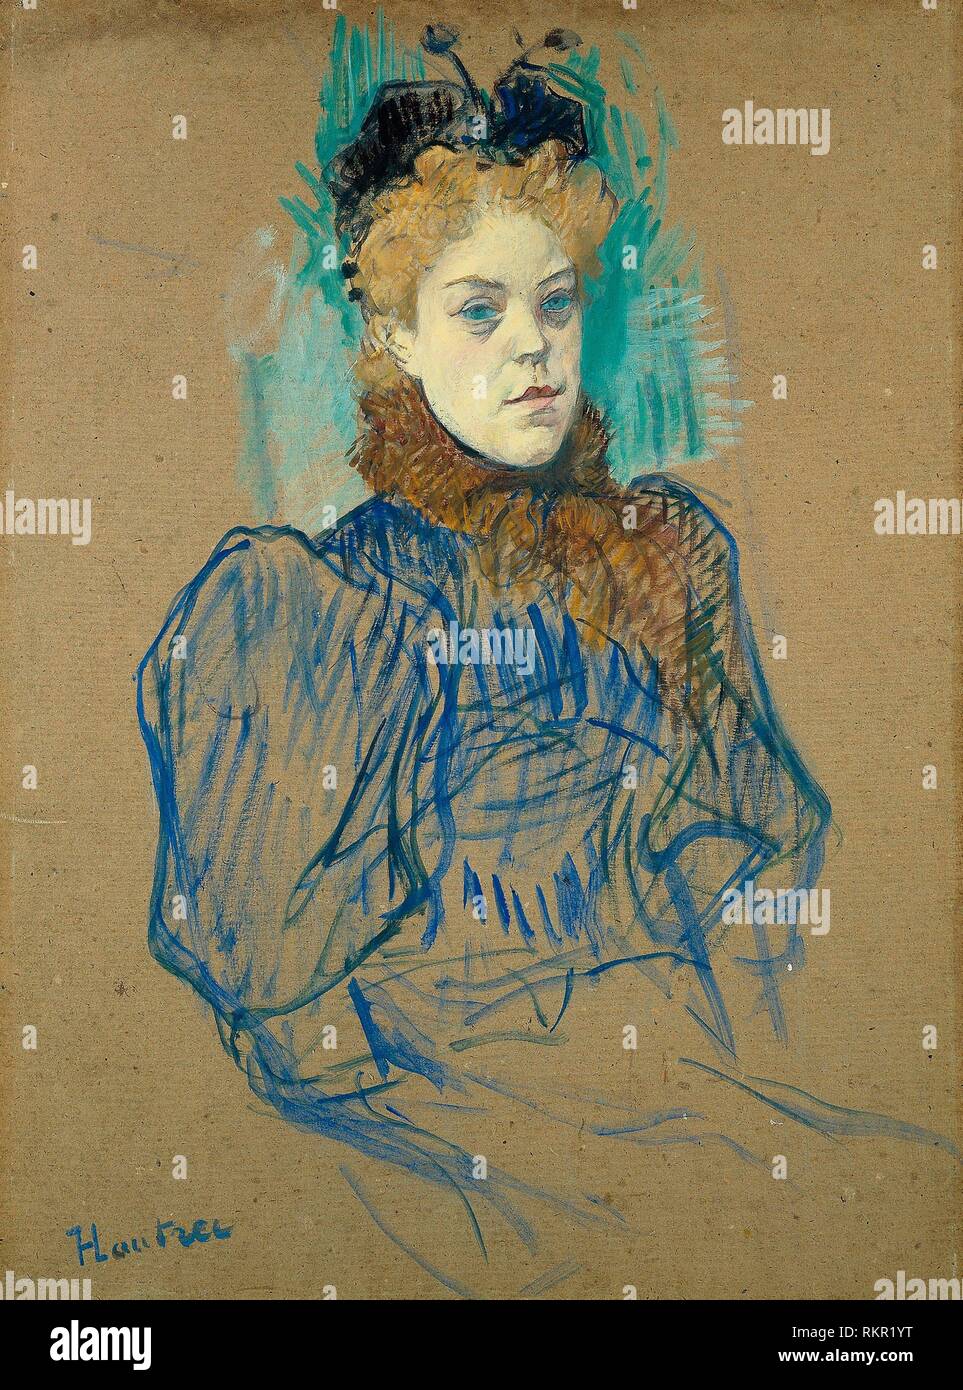 Milton - Mayo 1895 - francés Henri de Toulouse-Lautrec, 1864-1901 - Artista: Henri de Toulouse-Lautrec, Origen: Francia, Fecha: 1895, media: Petróleo y Foto de stock